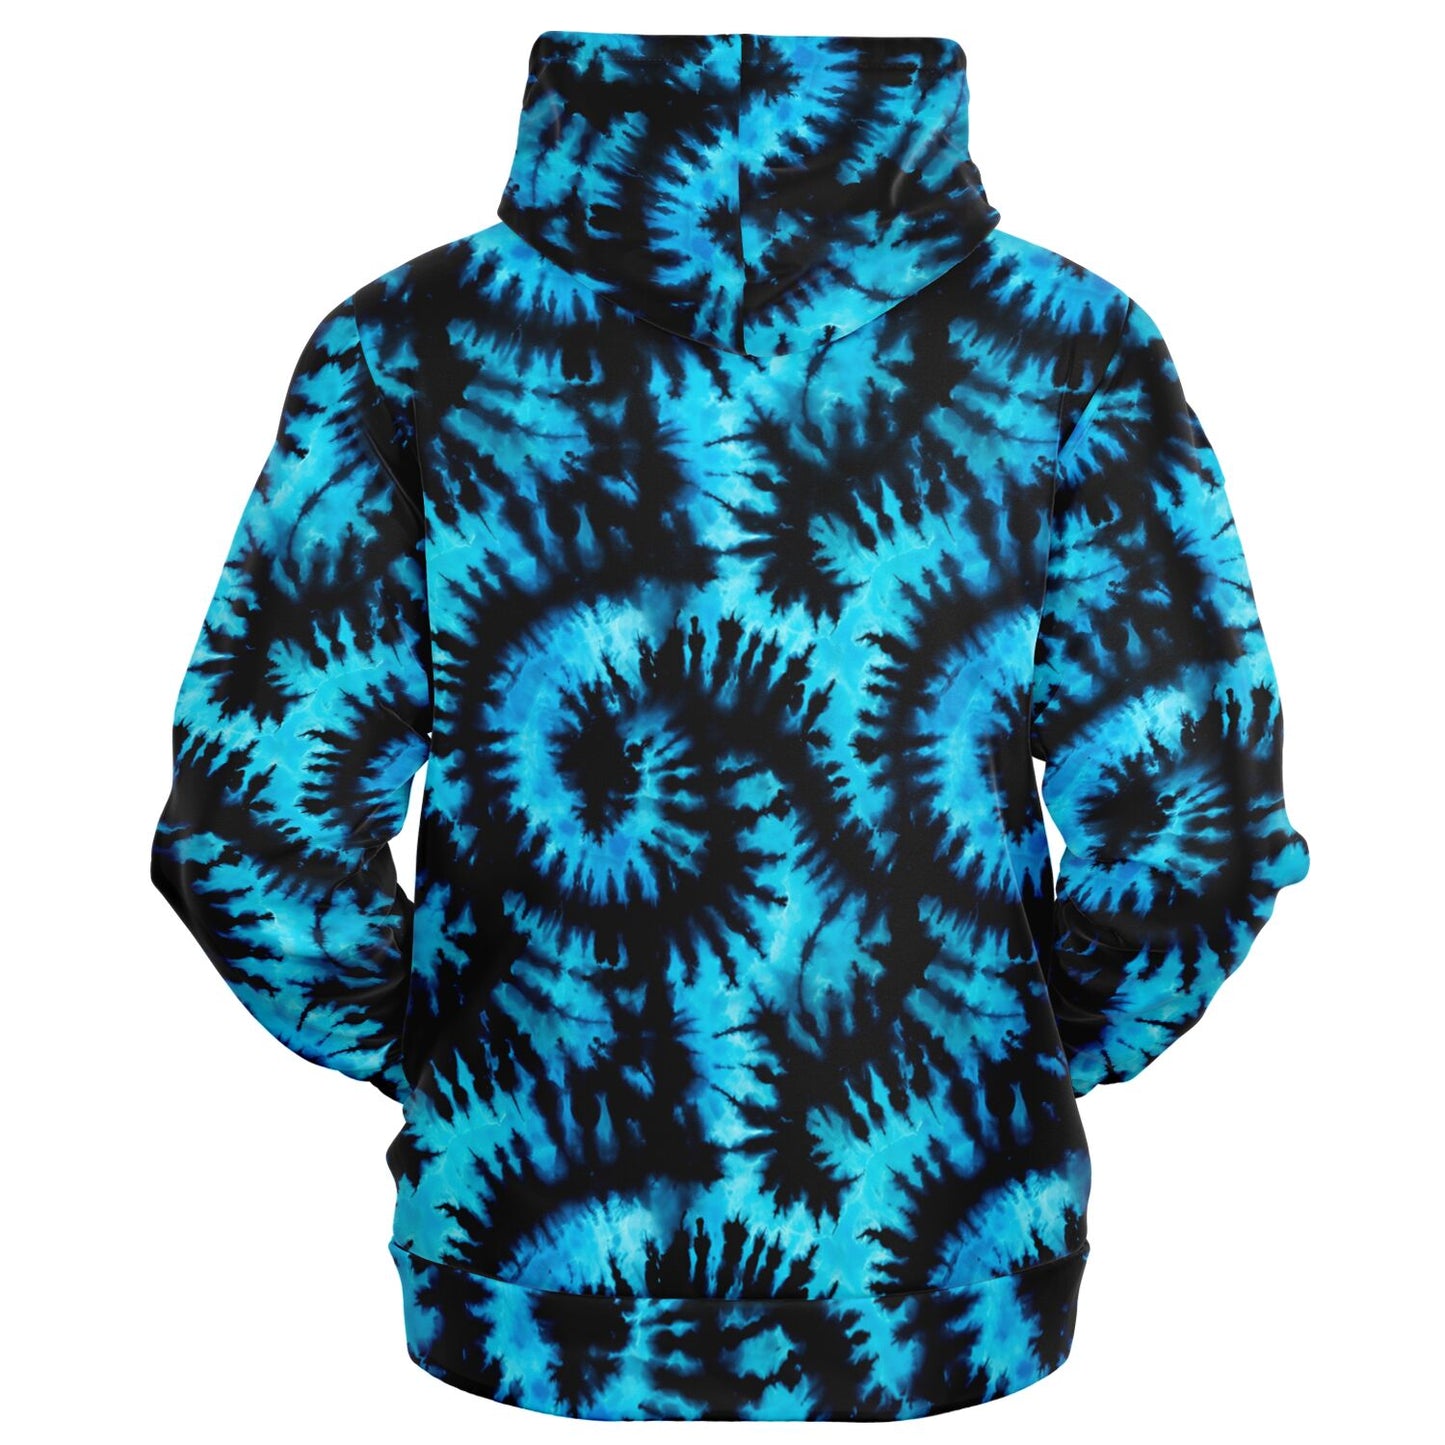 Black Blue Tie Dye Zip Up Hoodie, Front Zipper Pocket Men Women Unisex Adult Aesthetic Graphic Cotton Fleece Hooded Sweatshirt